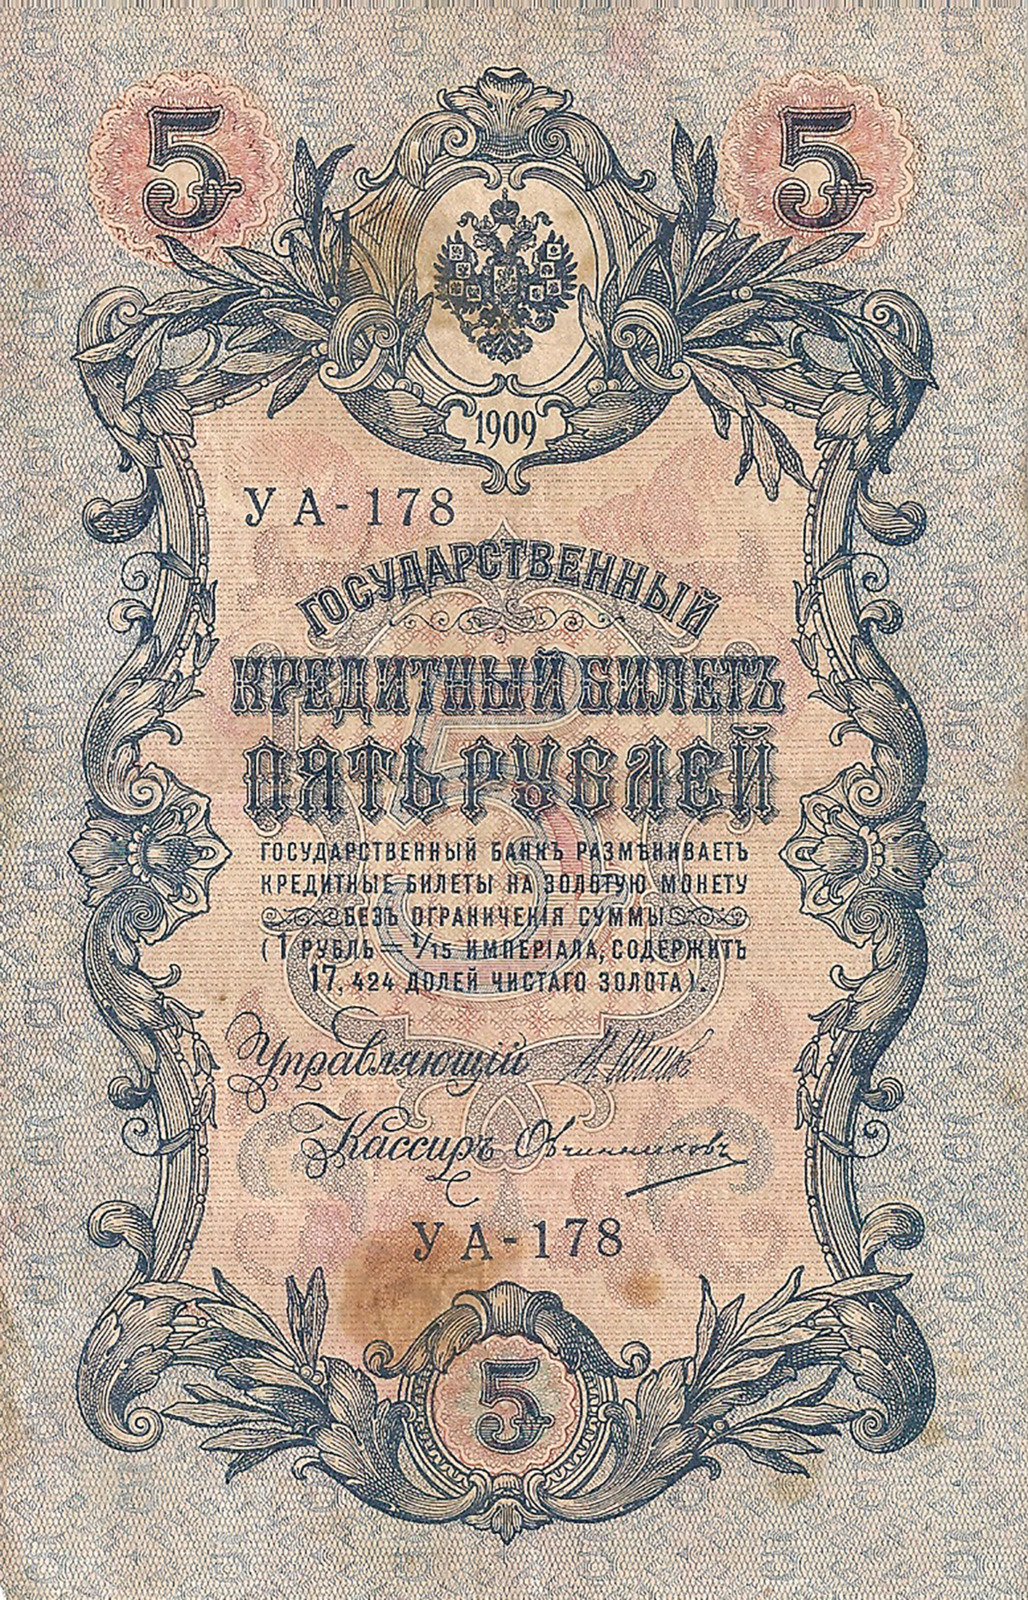 Банкнота номиналом 5 рублей. Россия. 1909 год (Шипов-Овчинников)УА-178